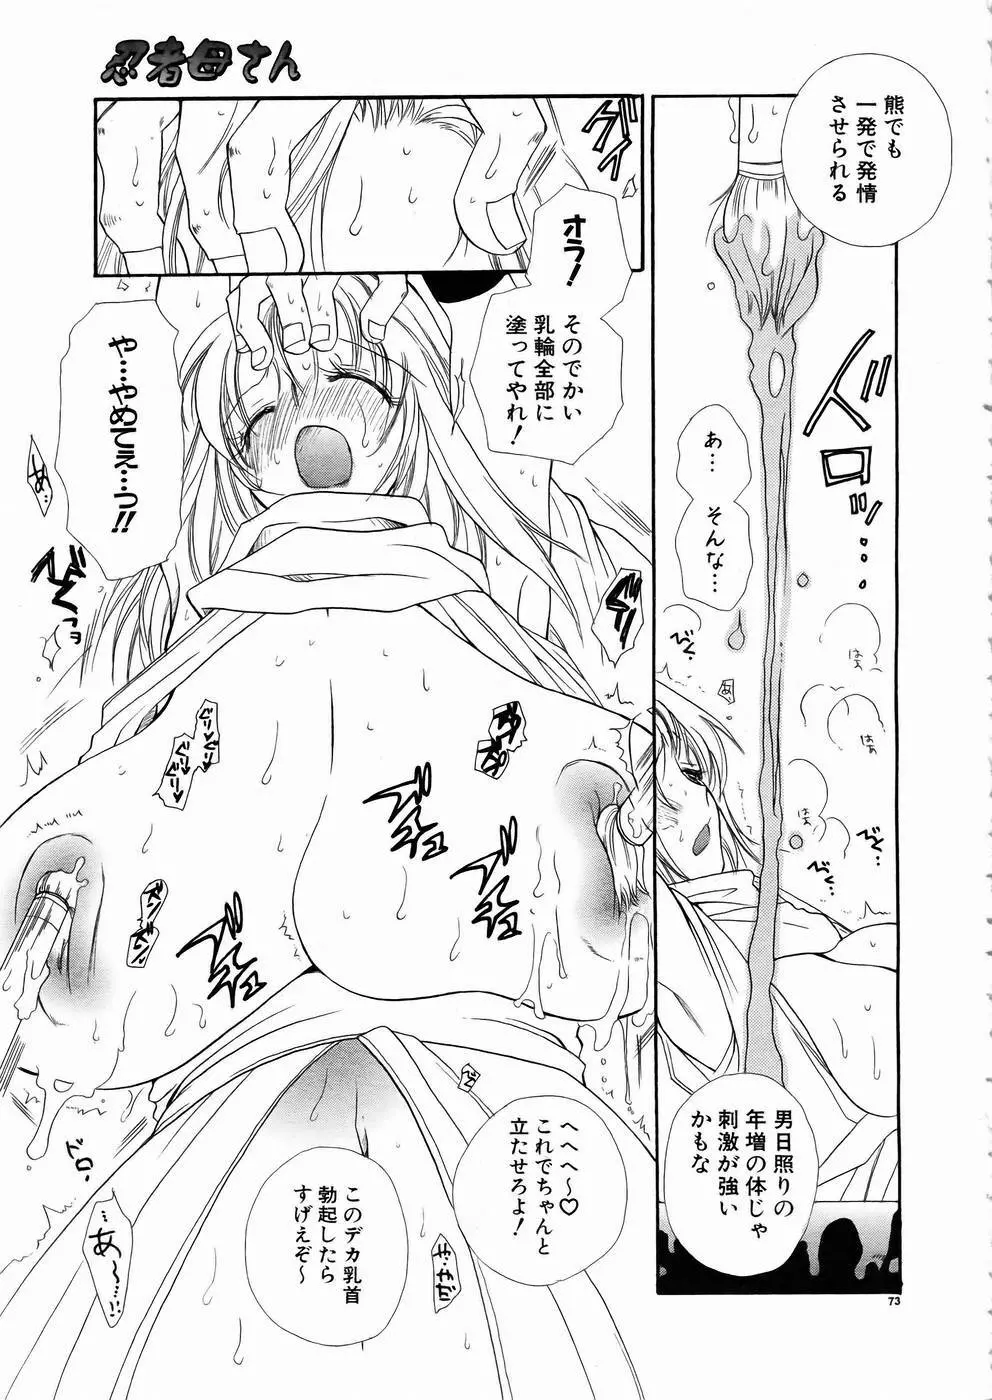 少女剣客凌辱コミック Vol.01 くノ一斬! 70ページ